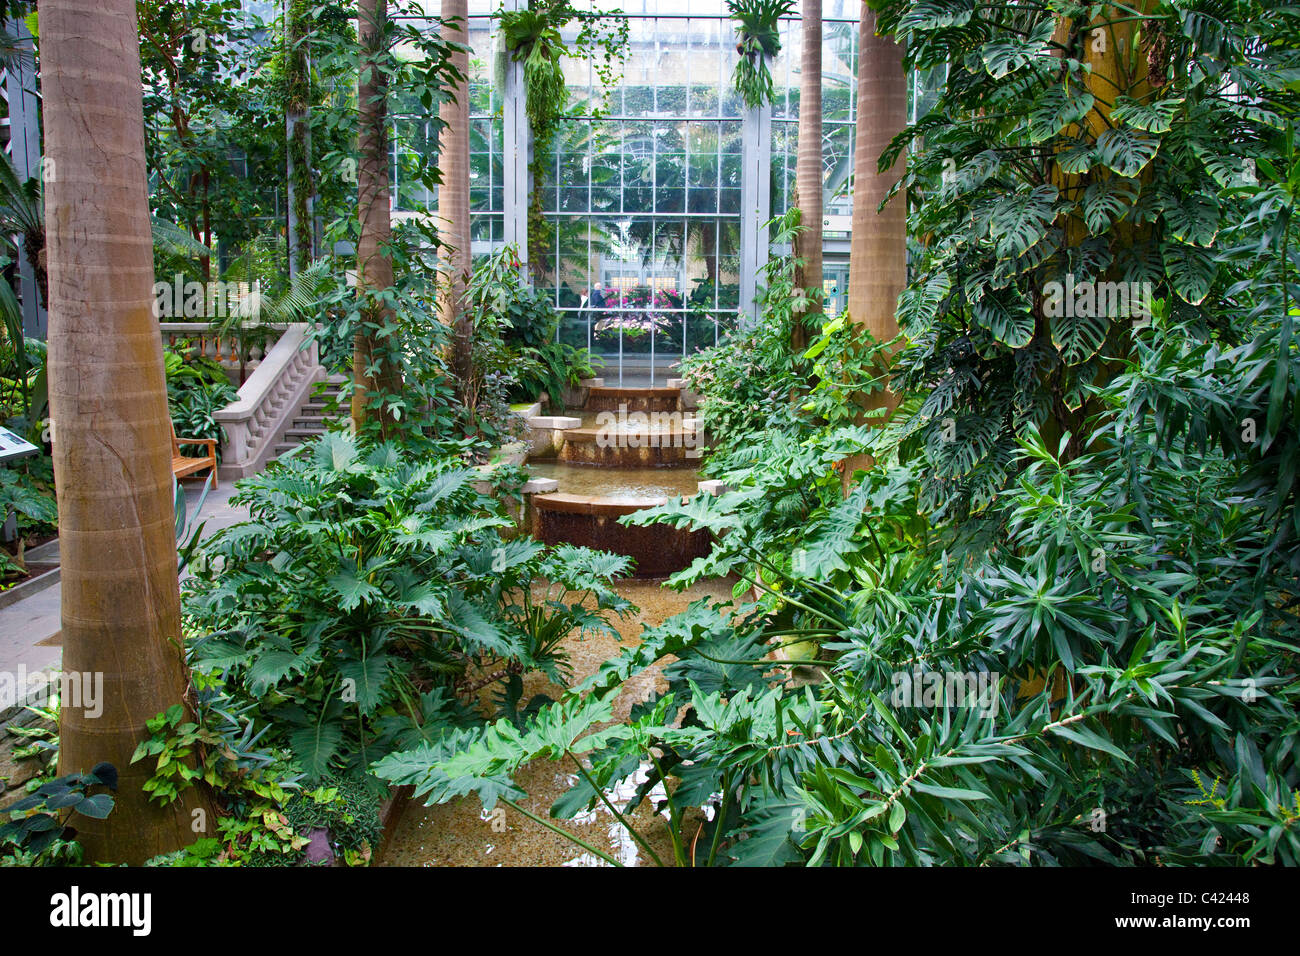 Conservatorio del Jardín Botánico de Estados Unidos, Washington, D.C. Foto de stock